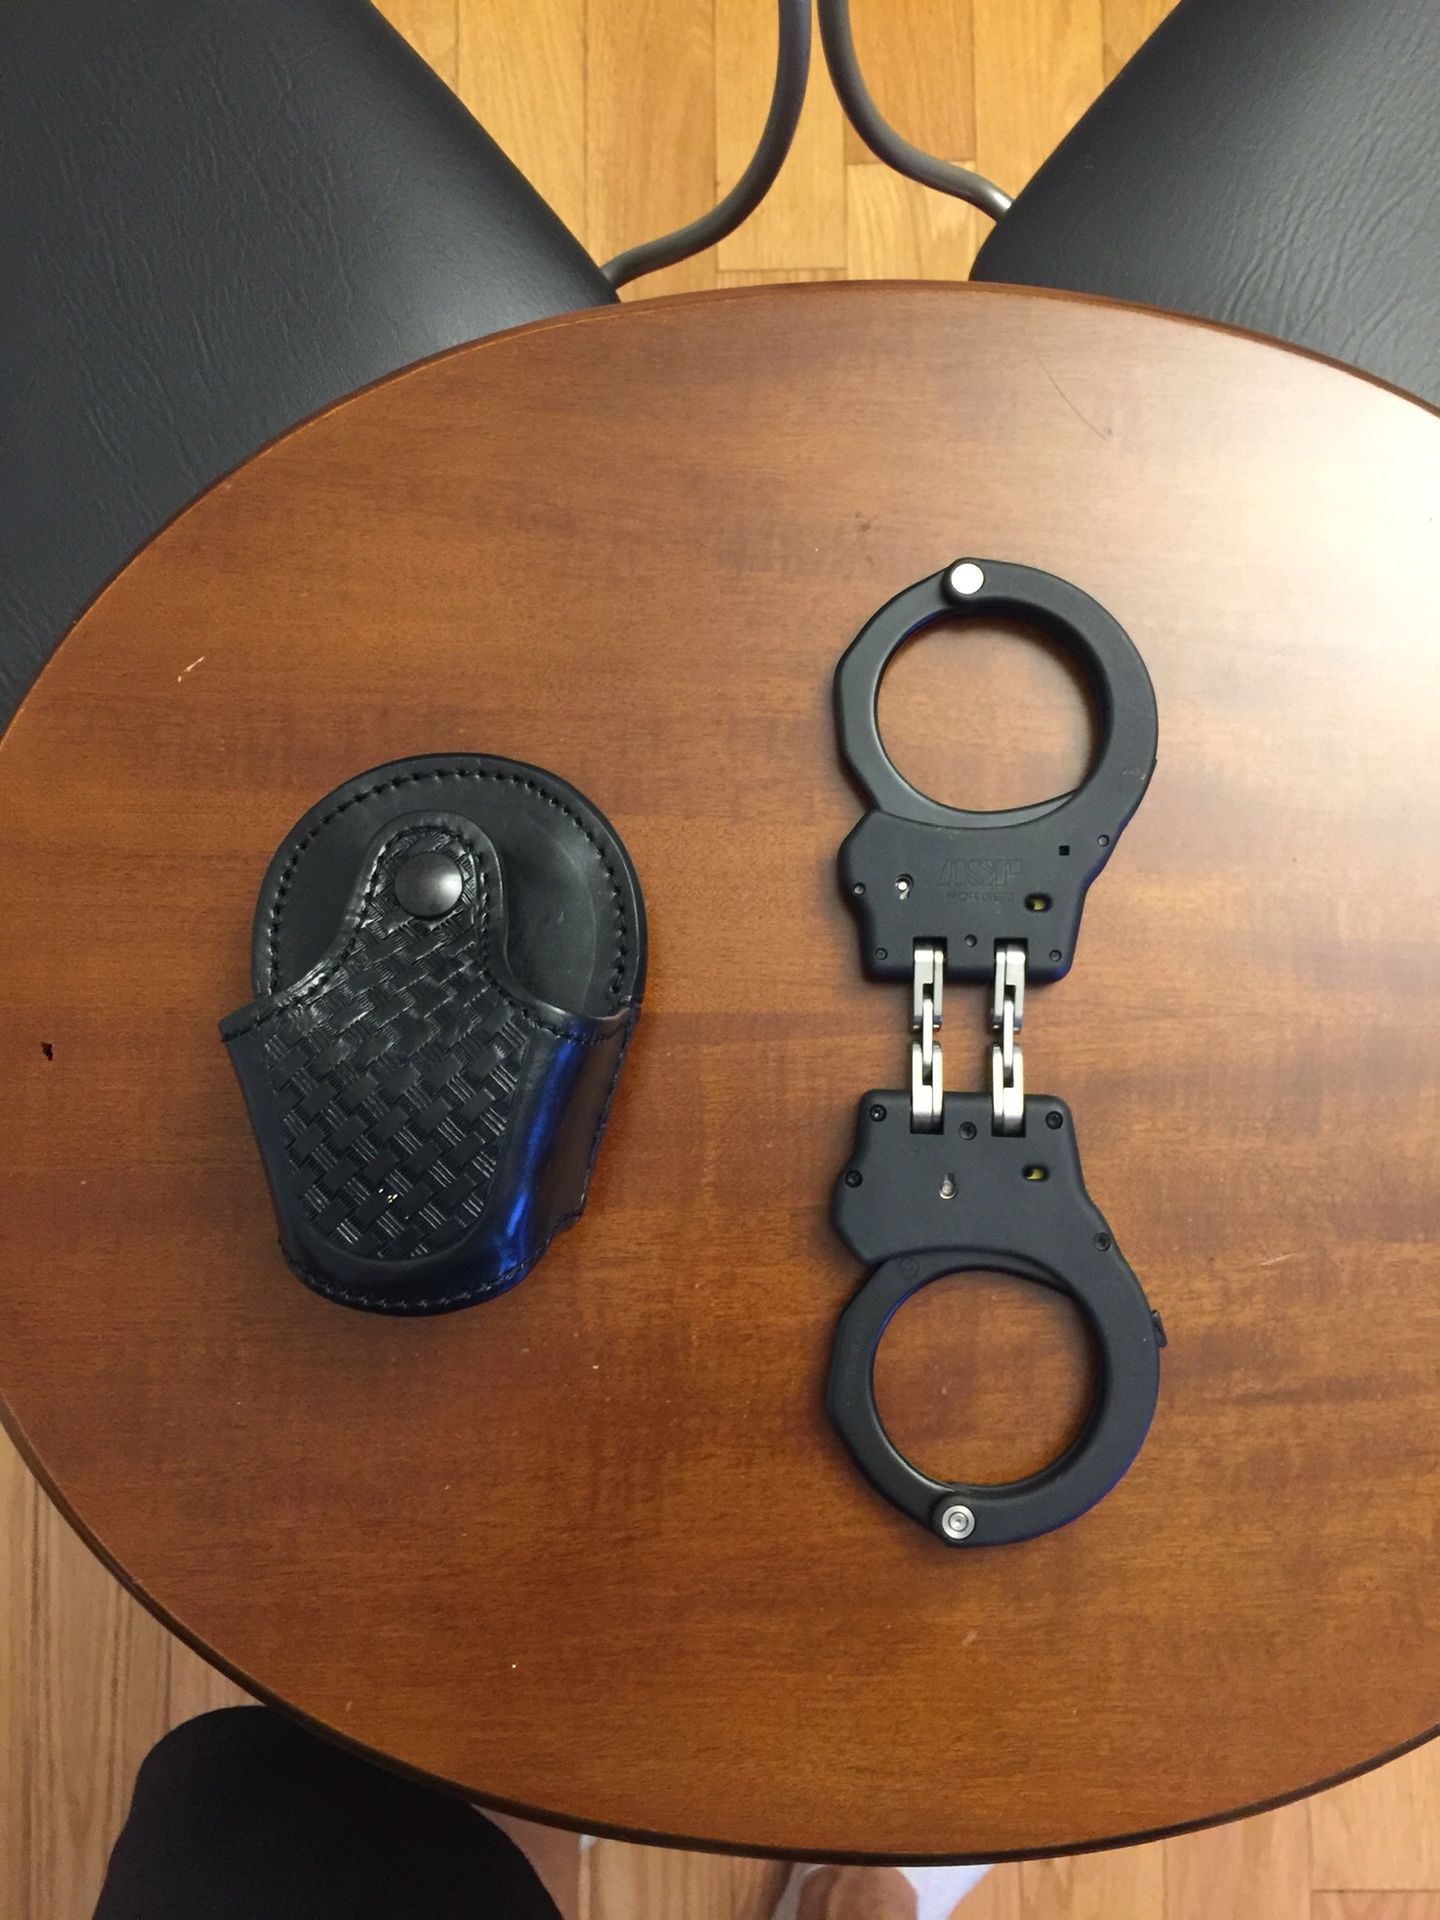 ASP handcuff and case